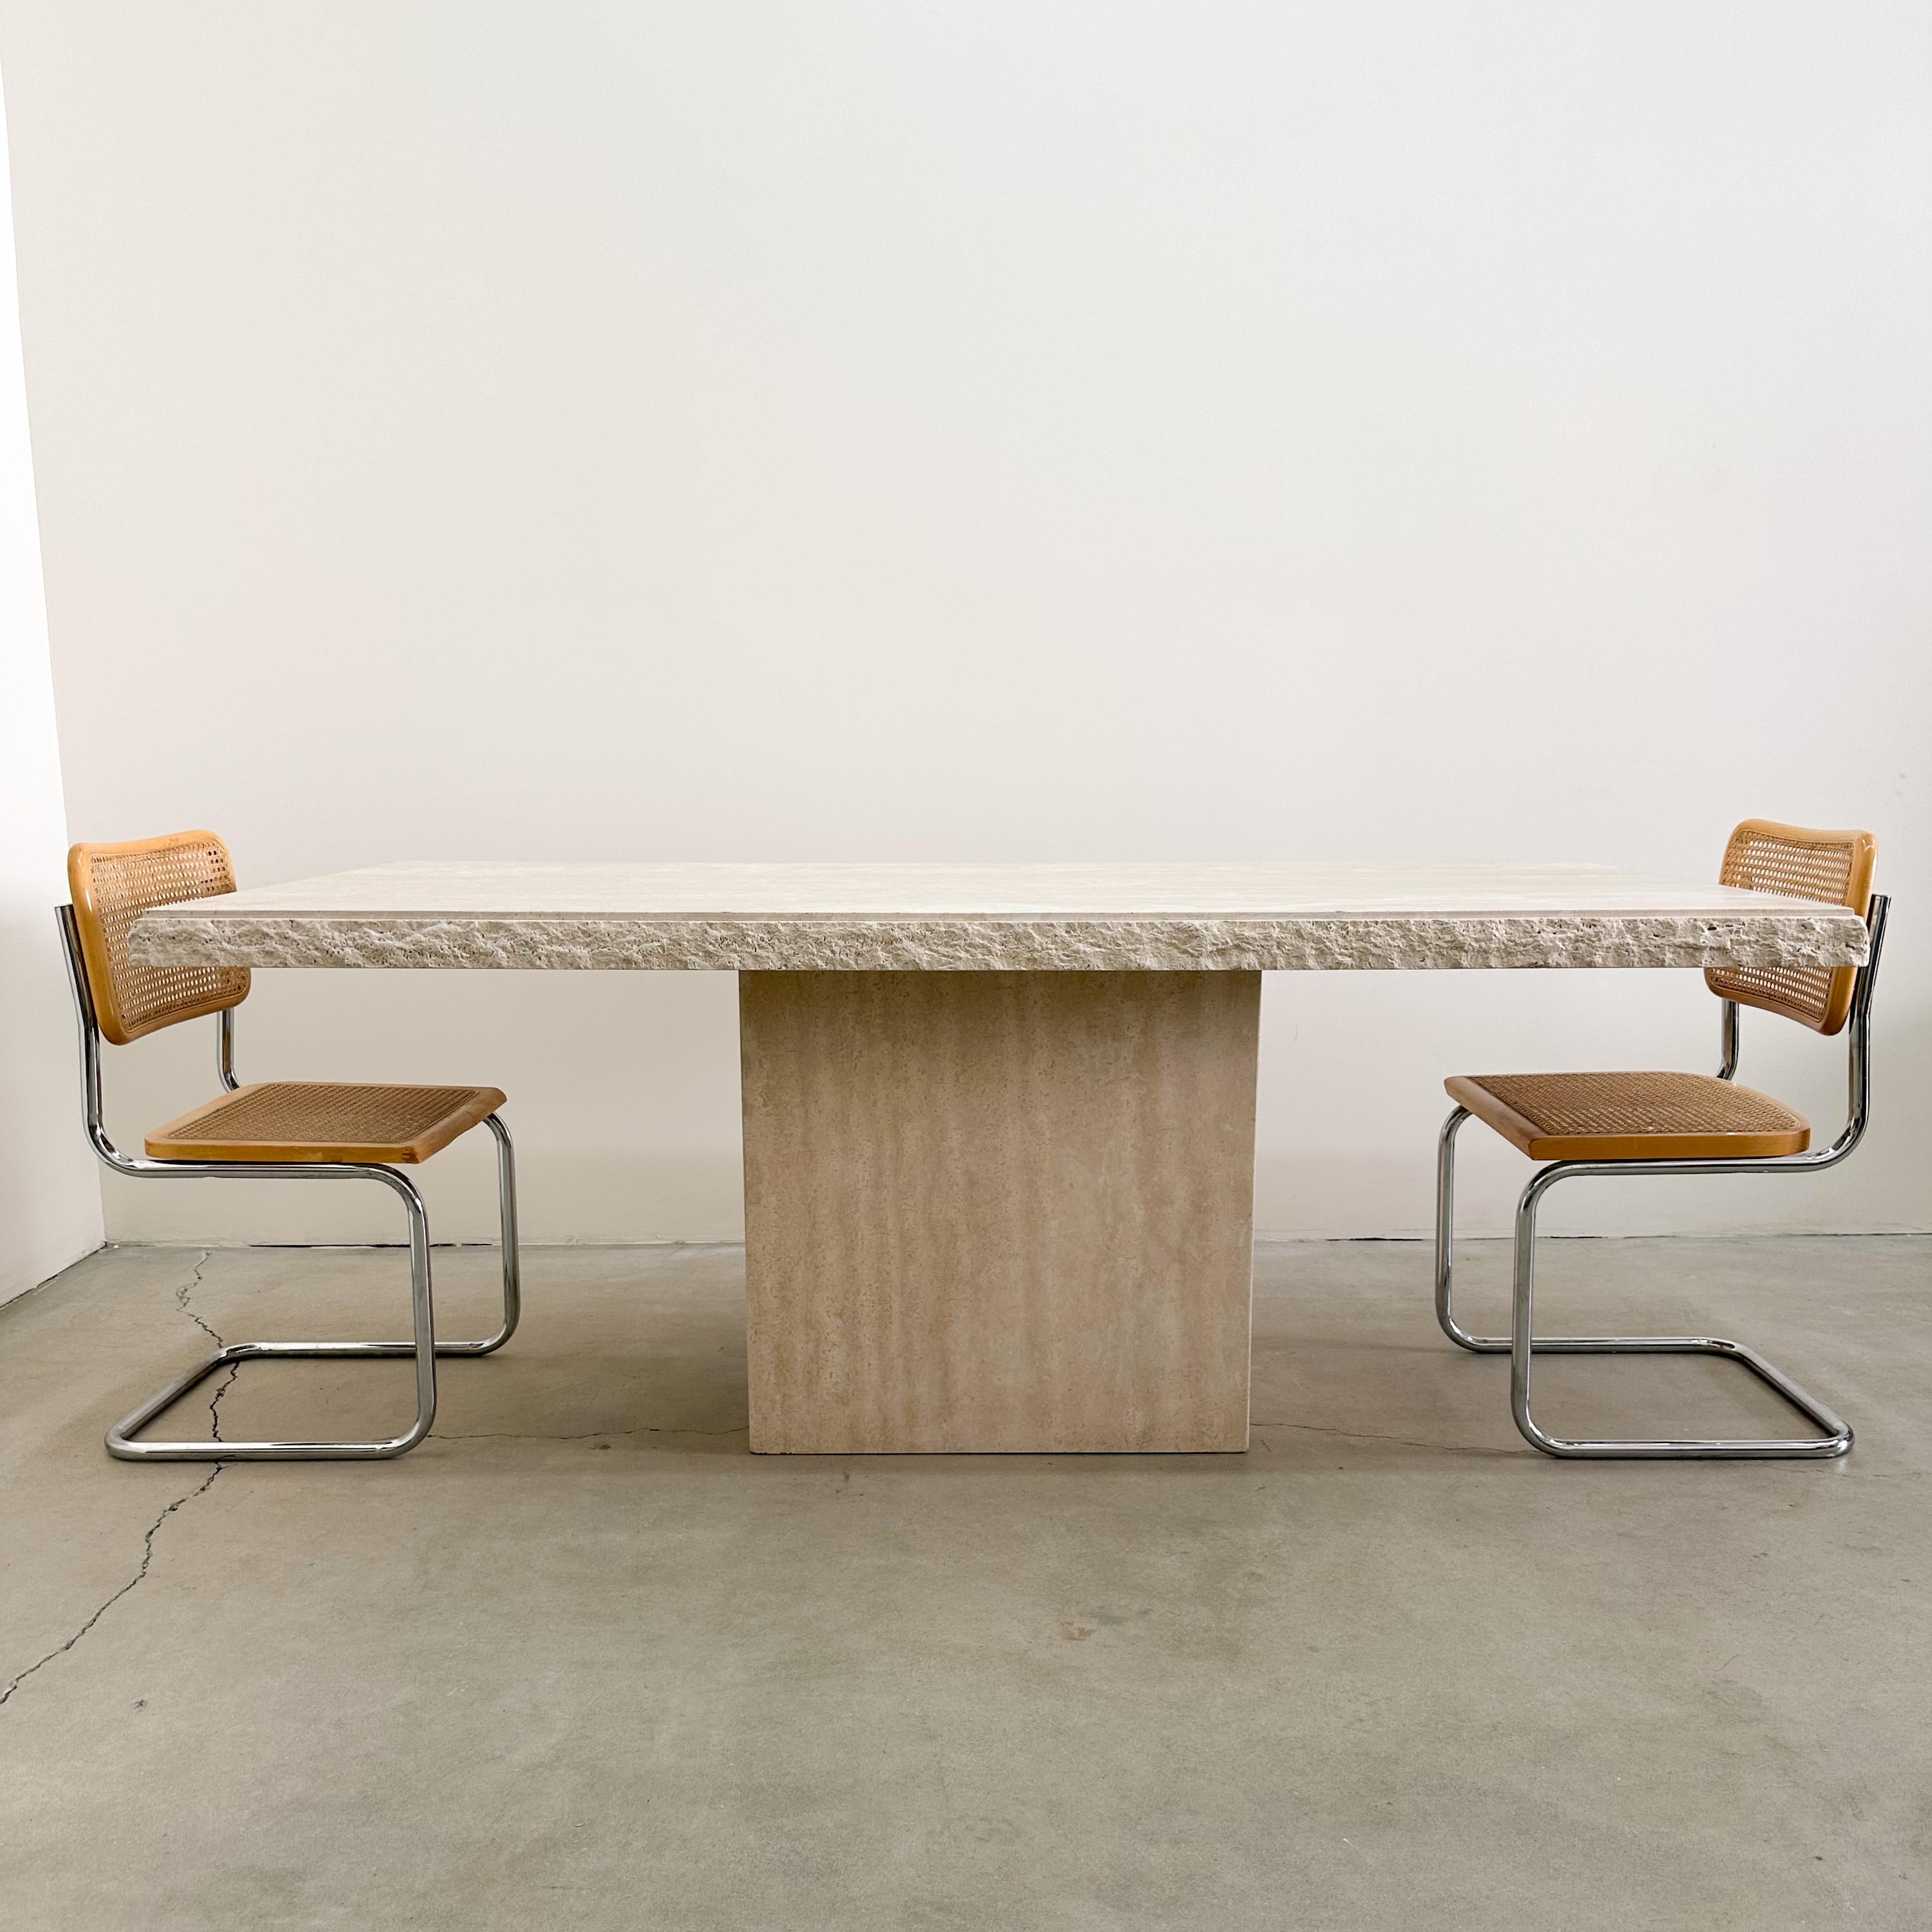 Table de salle à manger vintage rectangulaire en travertin à bords bruts. 

MATERIAL : La table est fabriquée en pierre de travertin solide, connue pour son attrait naturel et intemporel.

Design/One : Il s'agit d'une table en deux parties, dont le